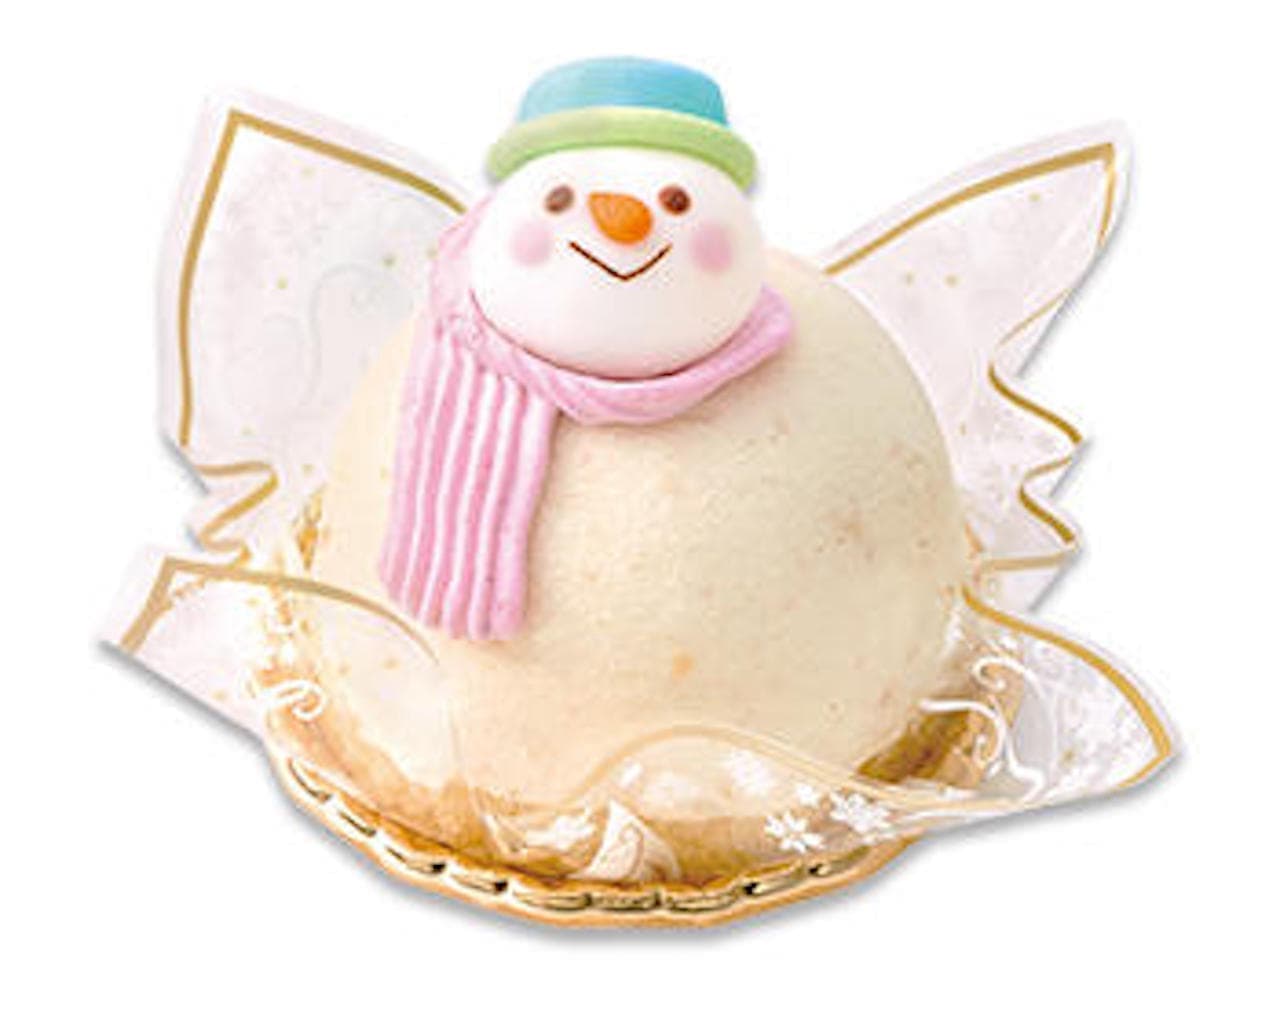 Fujiya "Christmas Snowman Cake"